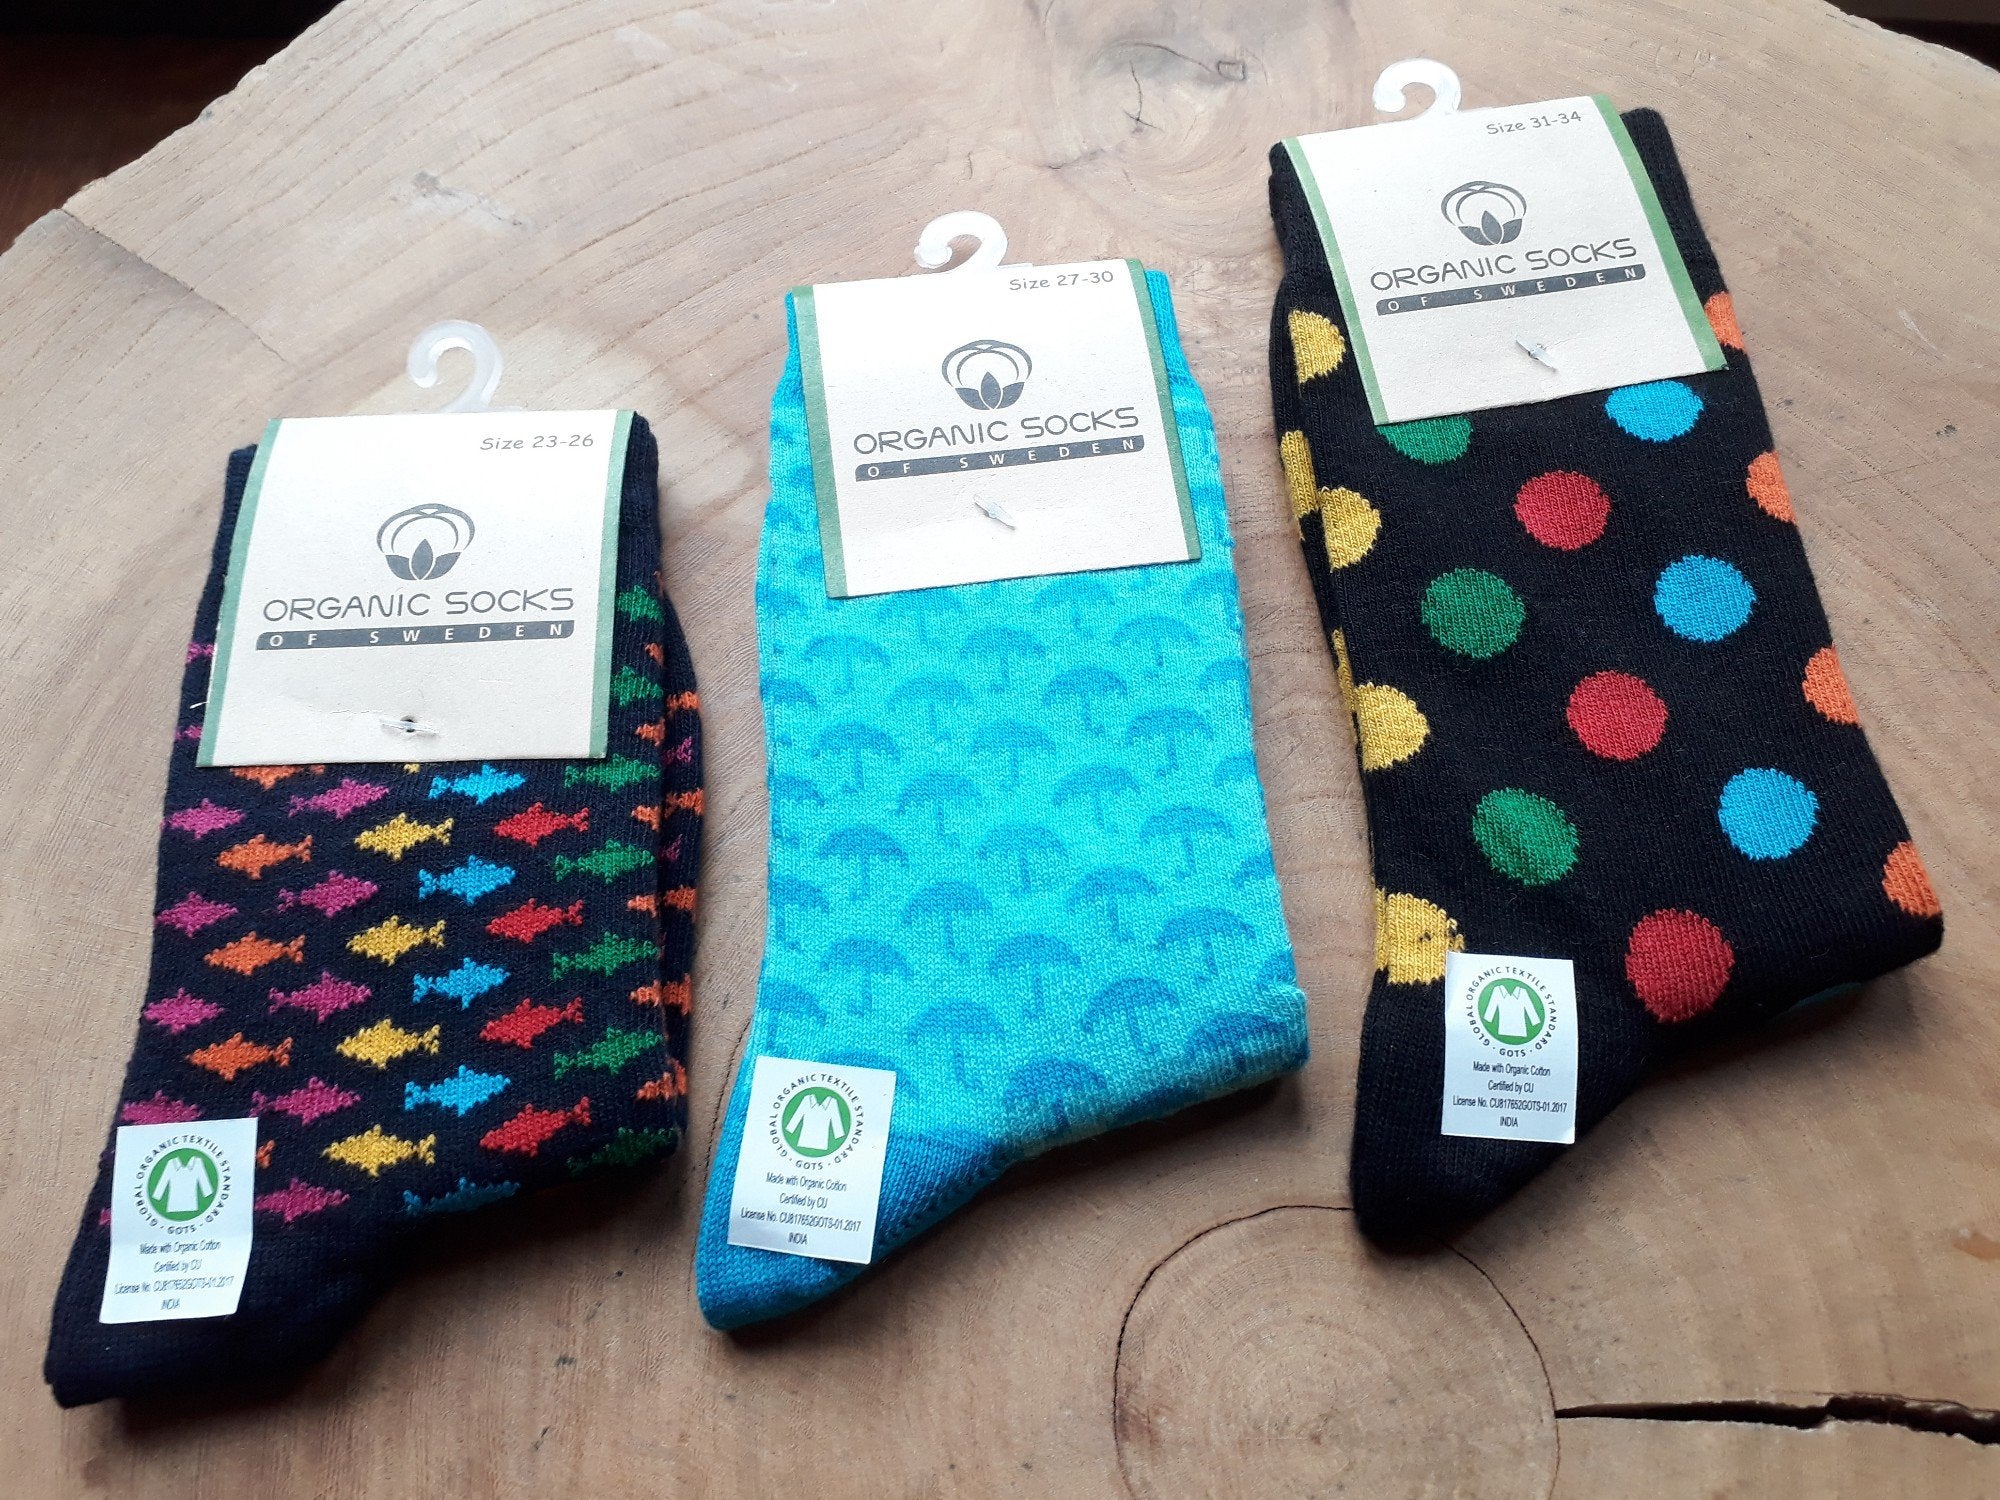 Sundberg kindersokken - Organic socks of Sweden